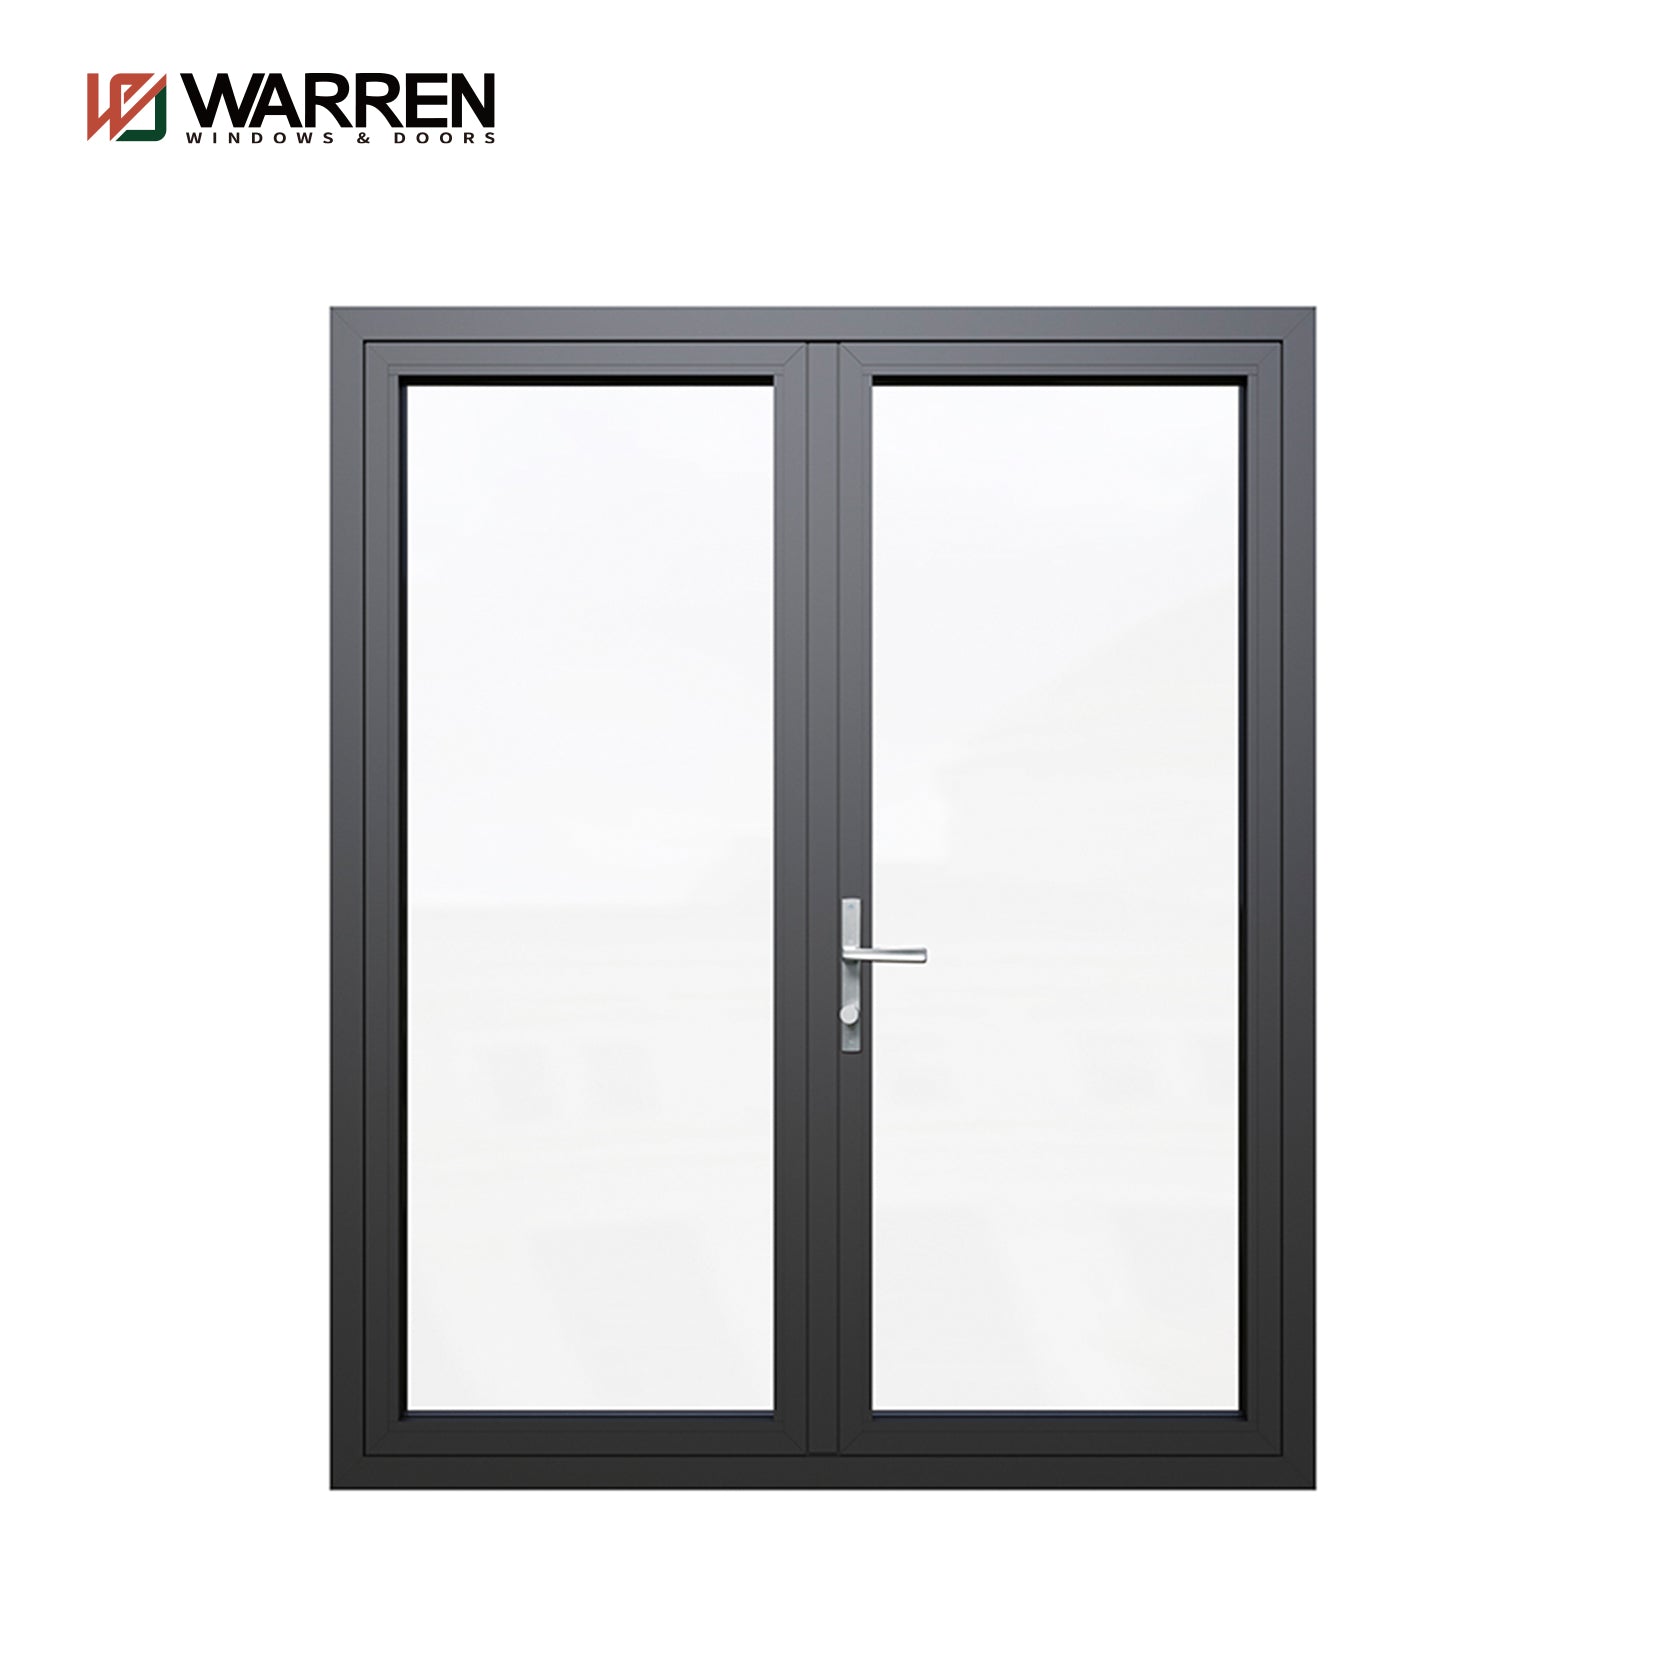 Warren Hot Sale & High Quality Aluminum Exterior Double Glass Entry Door Other Doors Casement Door